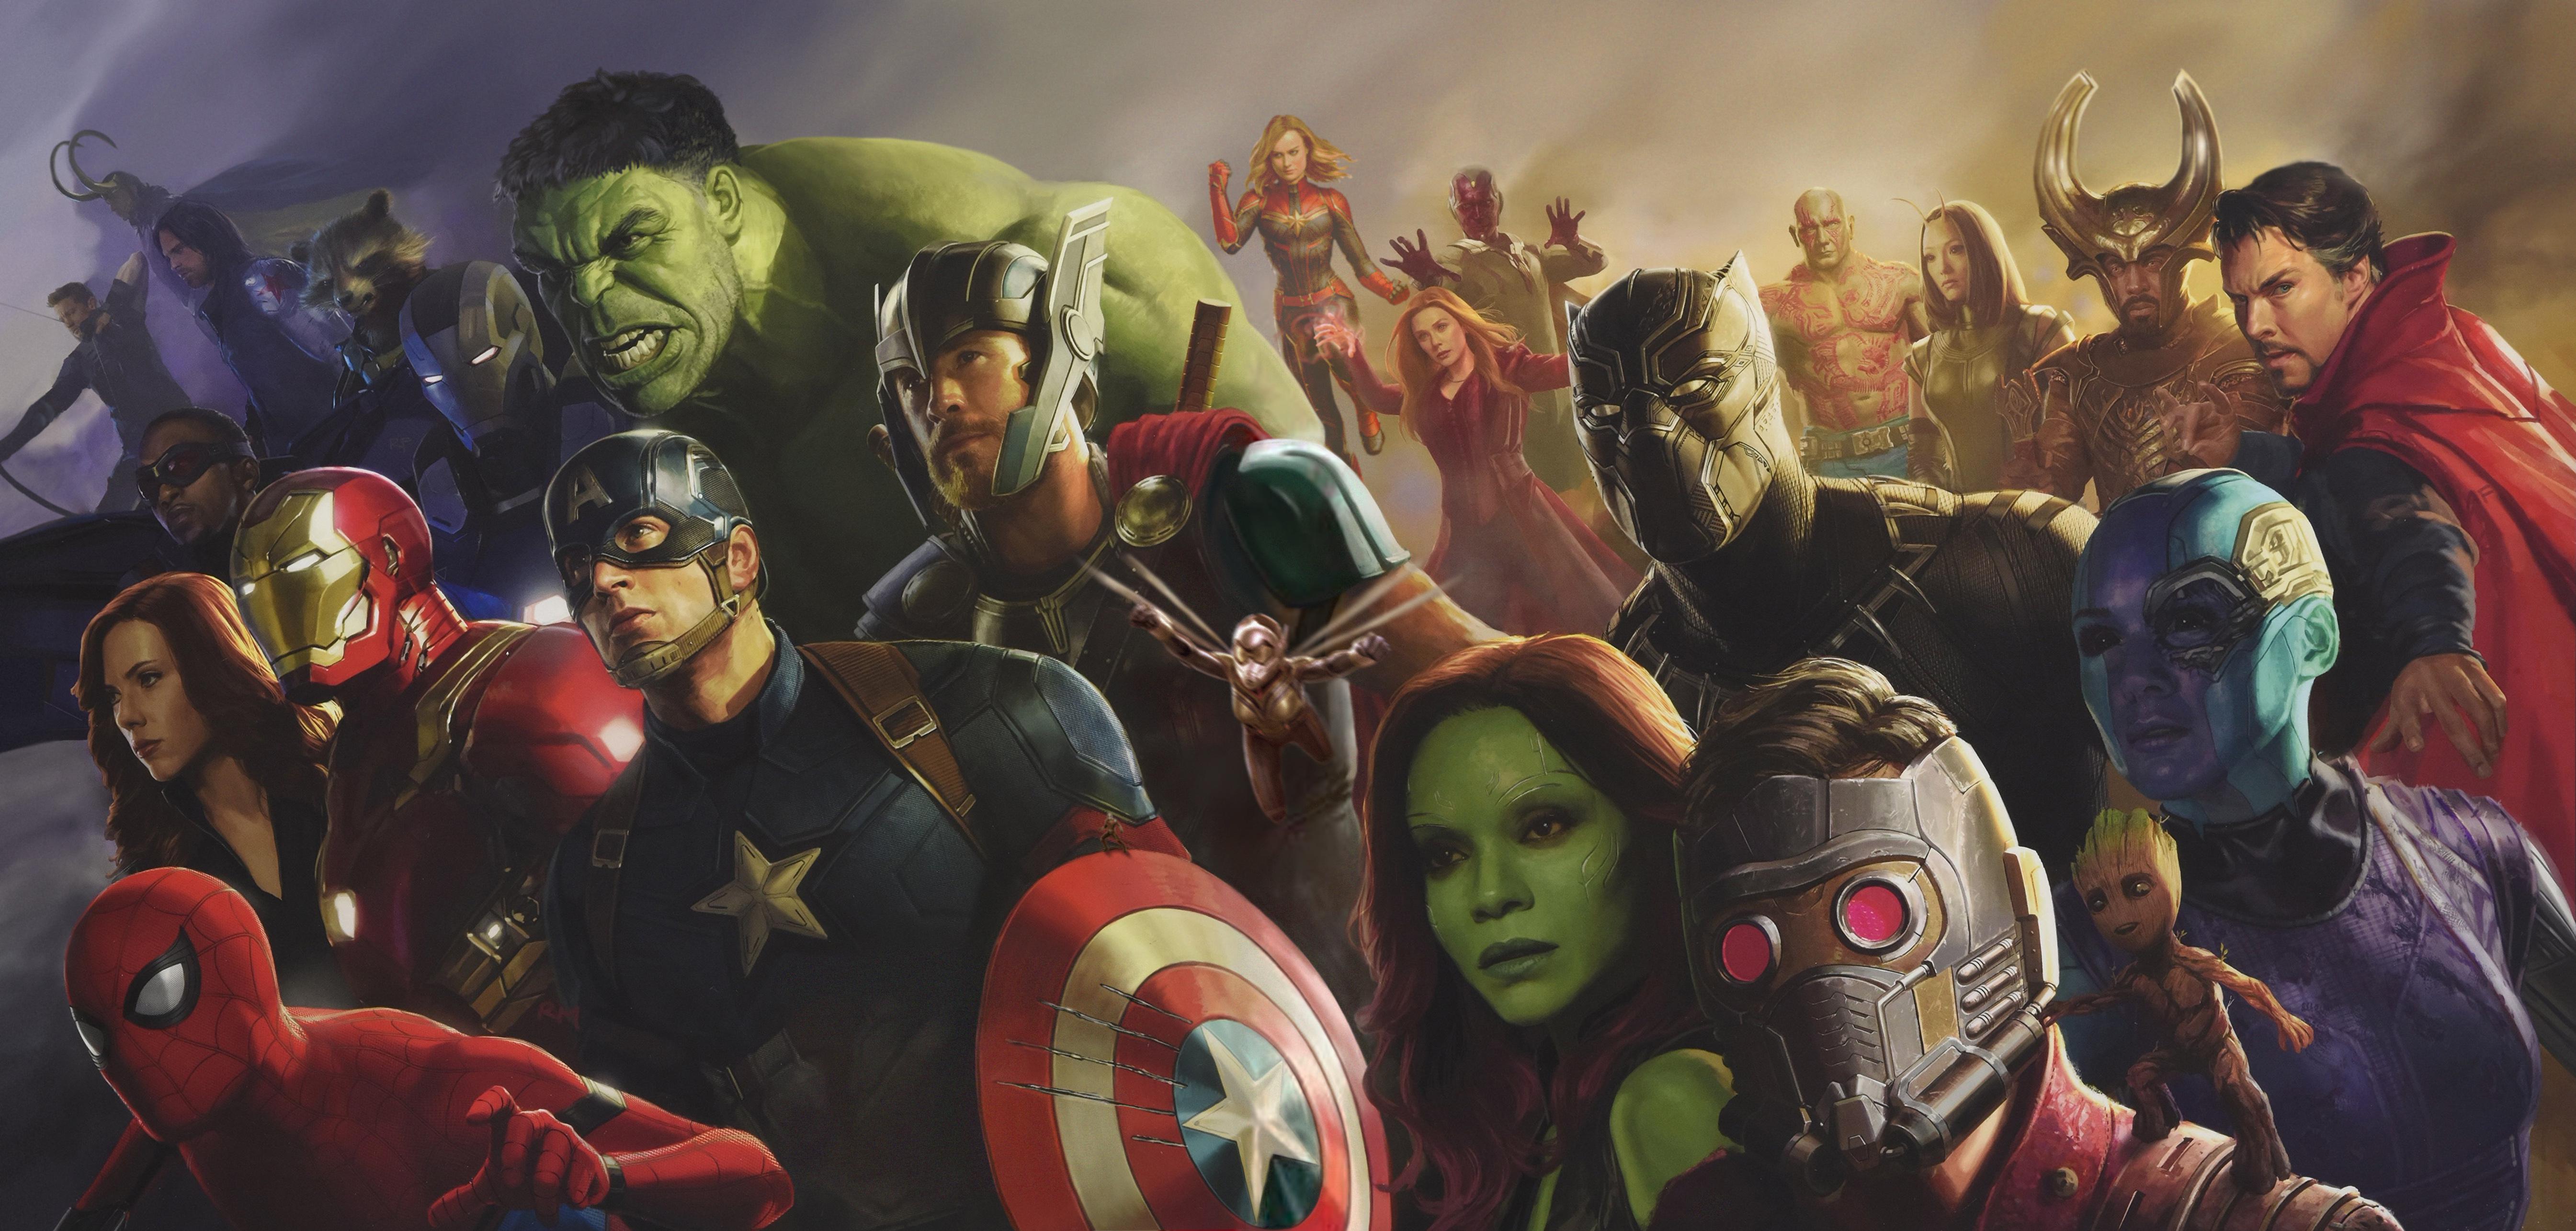 Movie Avengers: Infinity War 4k Ultra HD Wallpaper by Ryan Meinerding